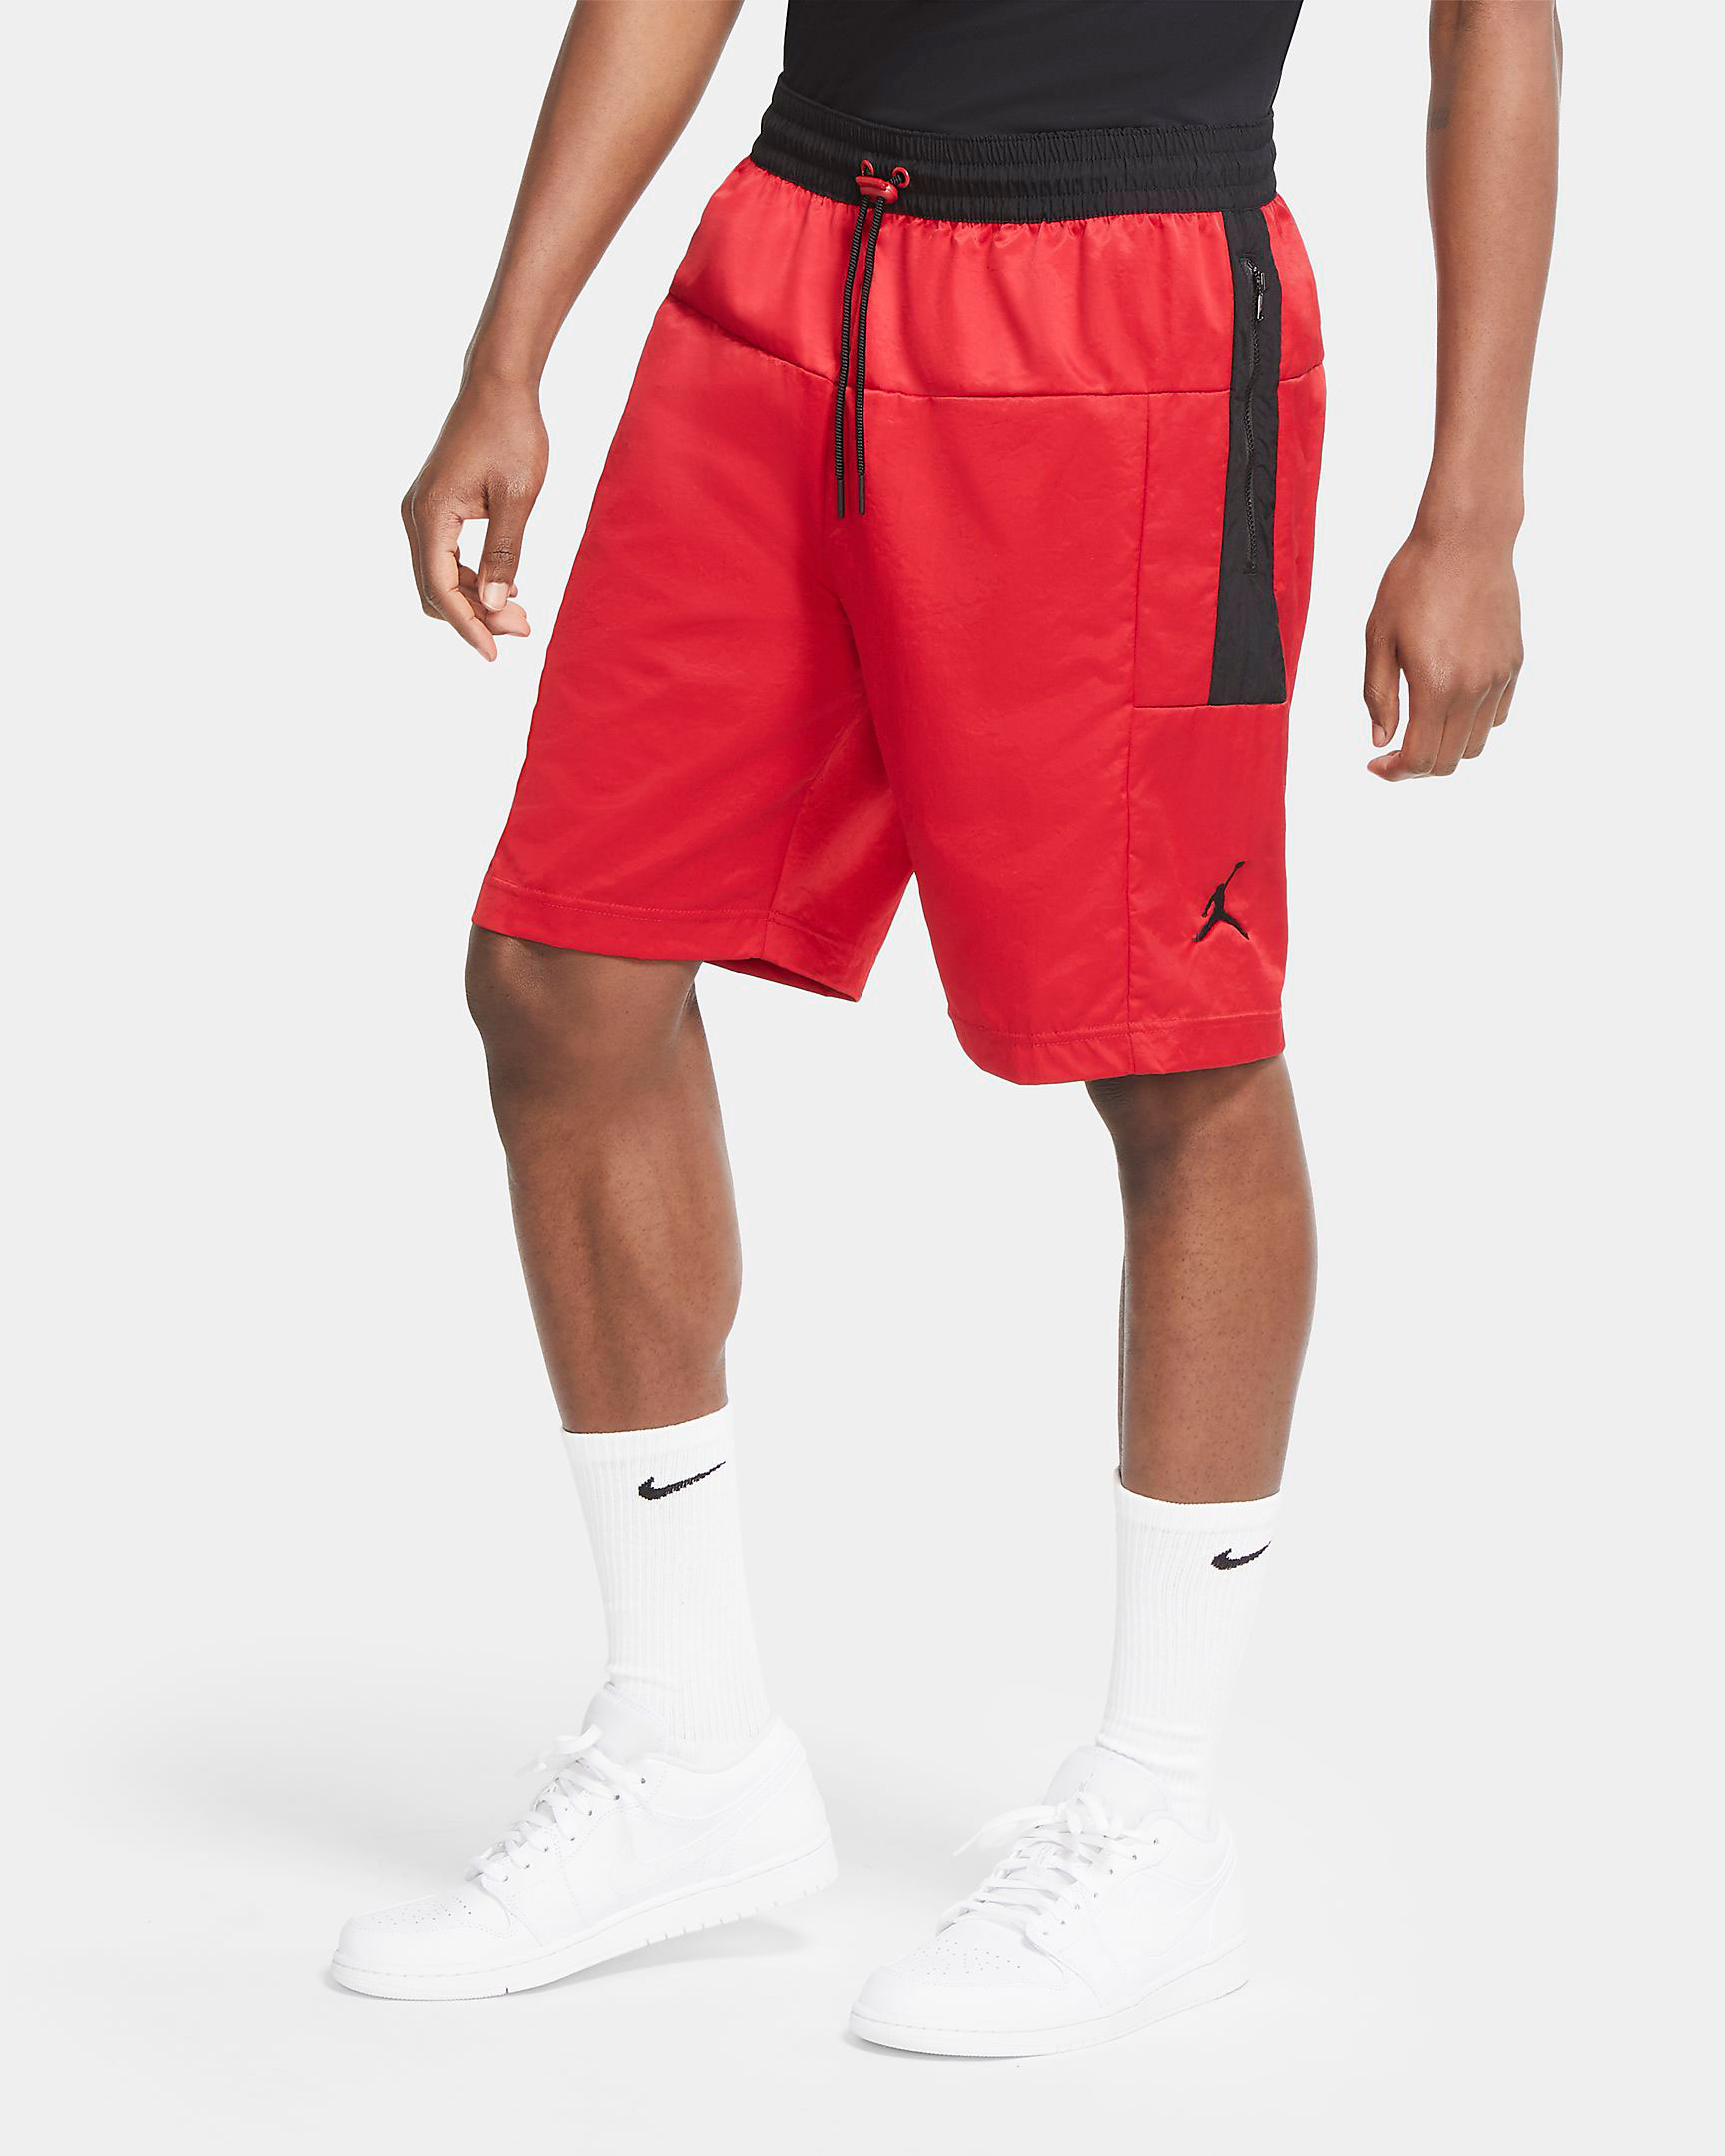 jordan-gym-red-block-shorts